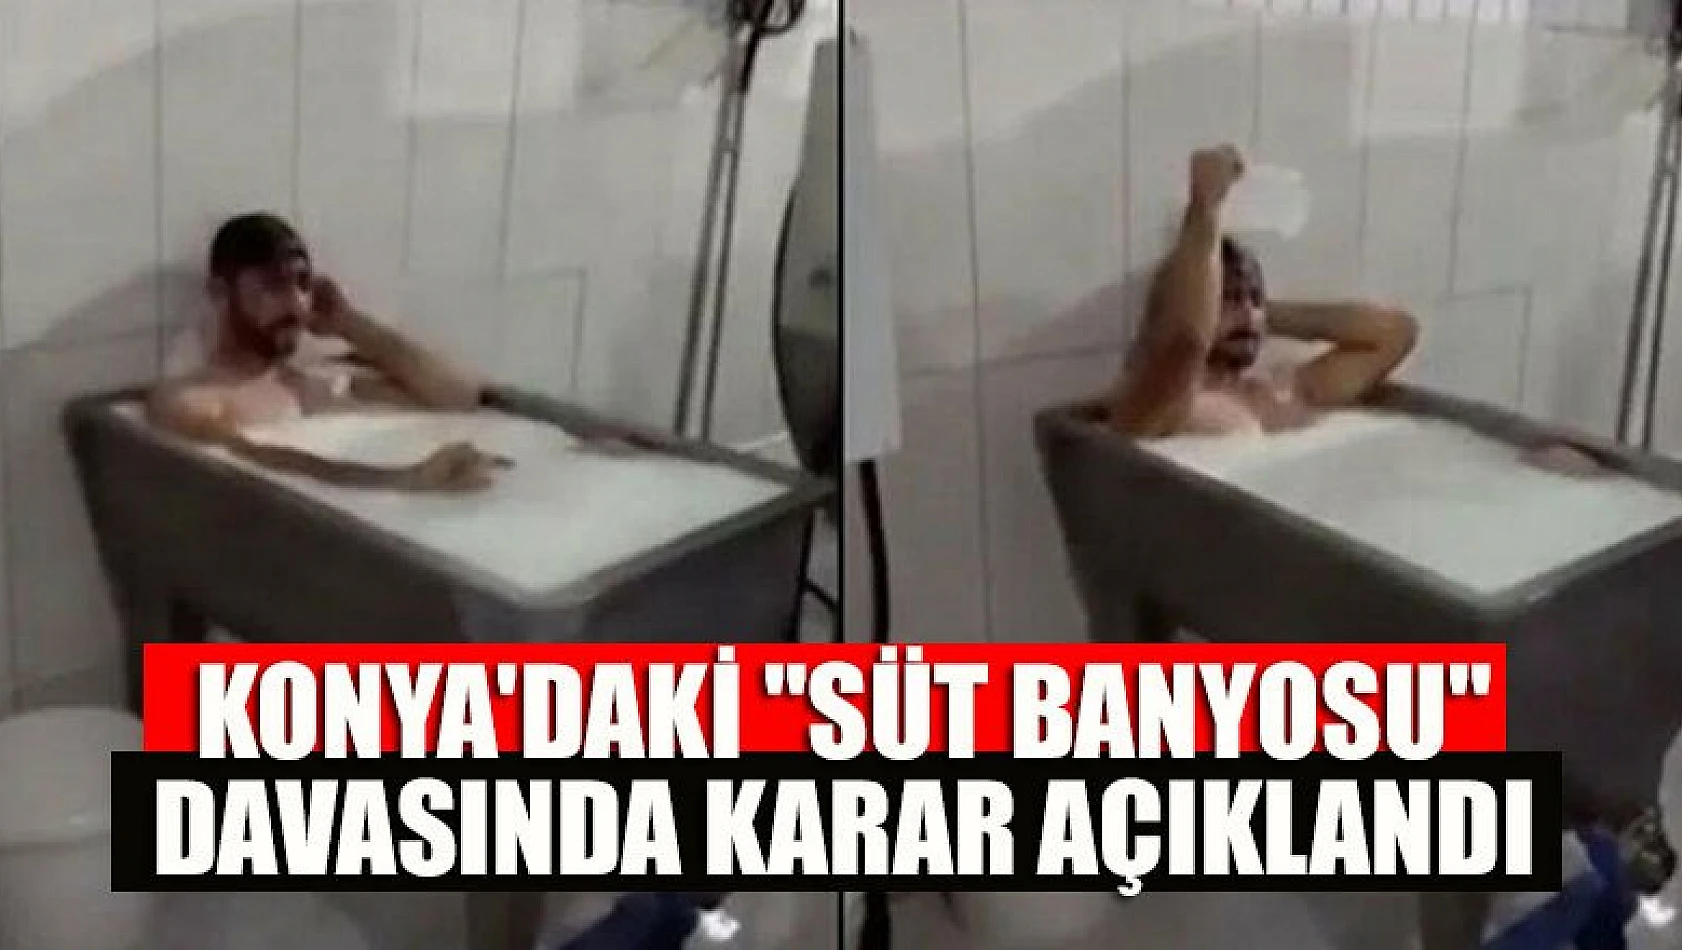 Konya'daki 'süt banyosu' davasında karar açıklandı